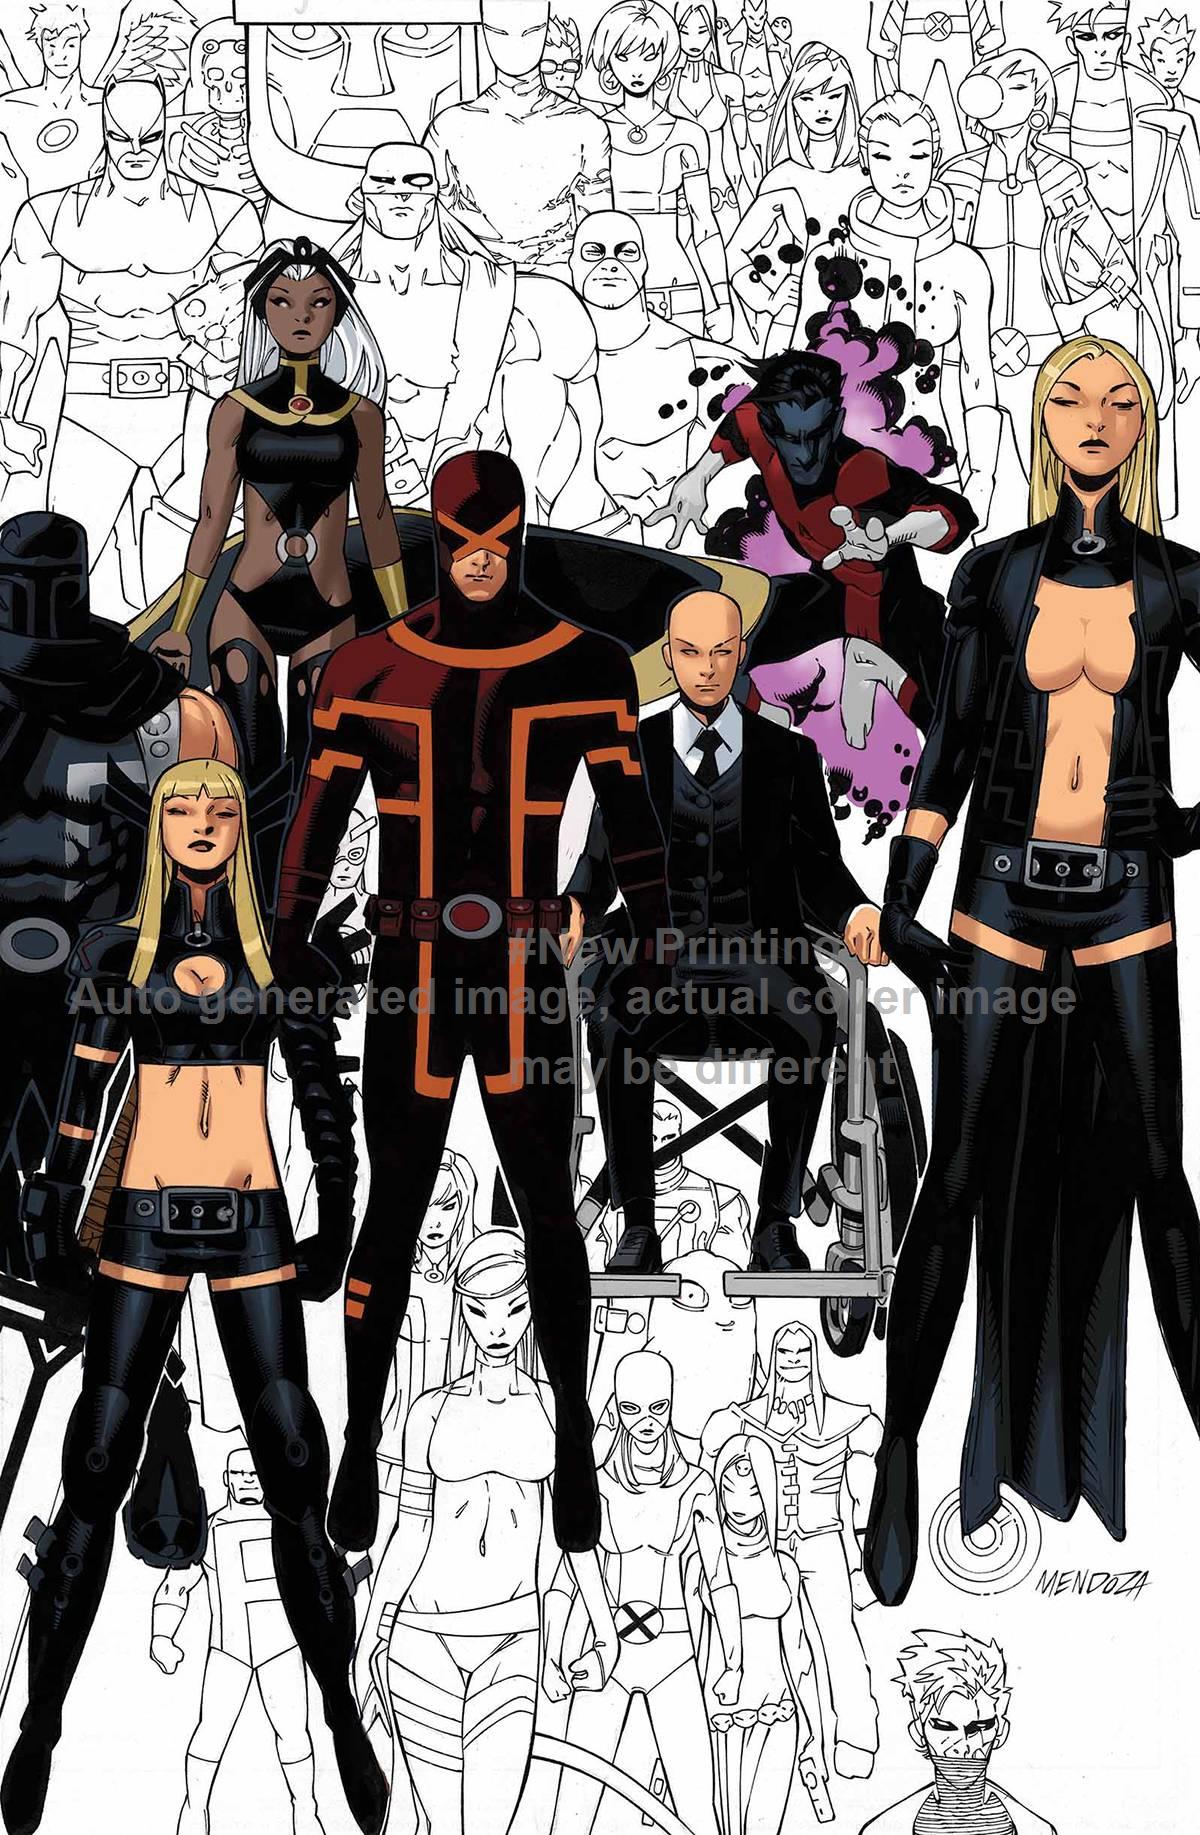 Uncanny X-Men #600 Hughes Variant